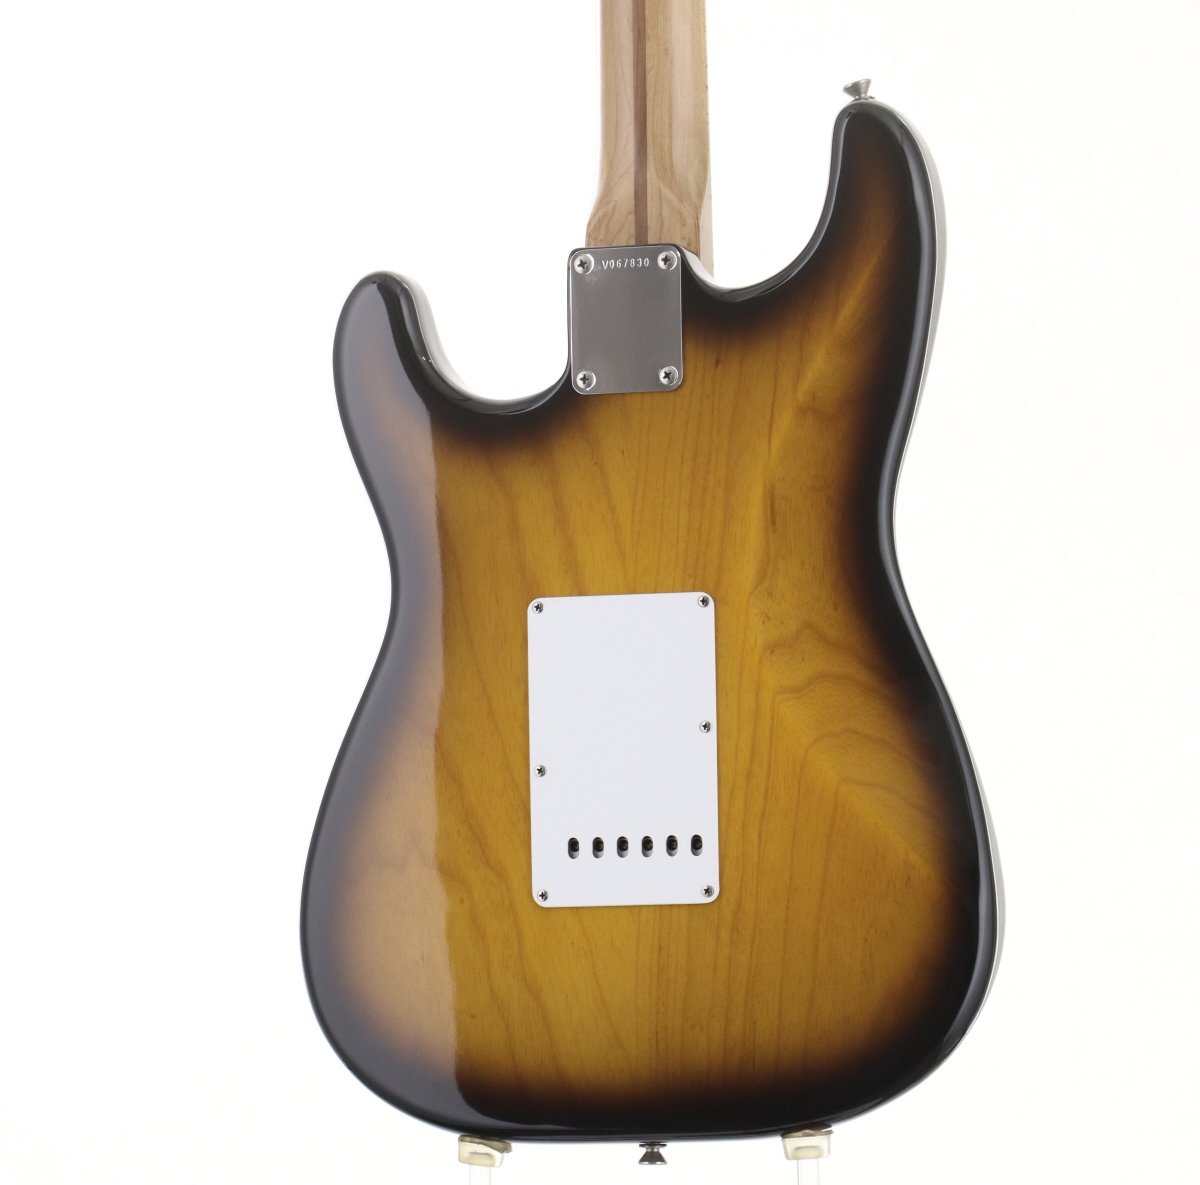 [SN V067830] USED Fender Custom Shop / 1954 Stratocaster 2 Tone Sunburst 1993 [10]